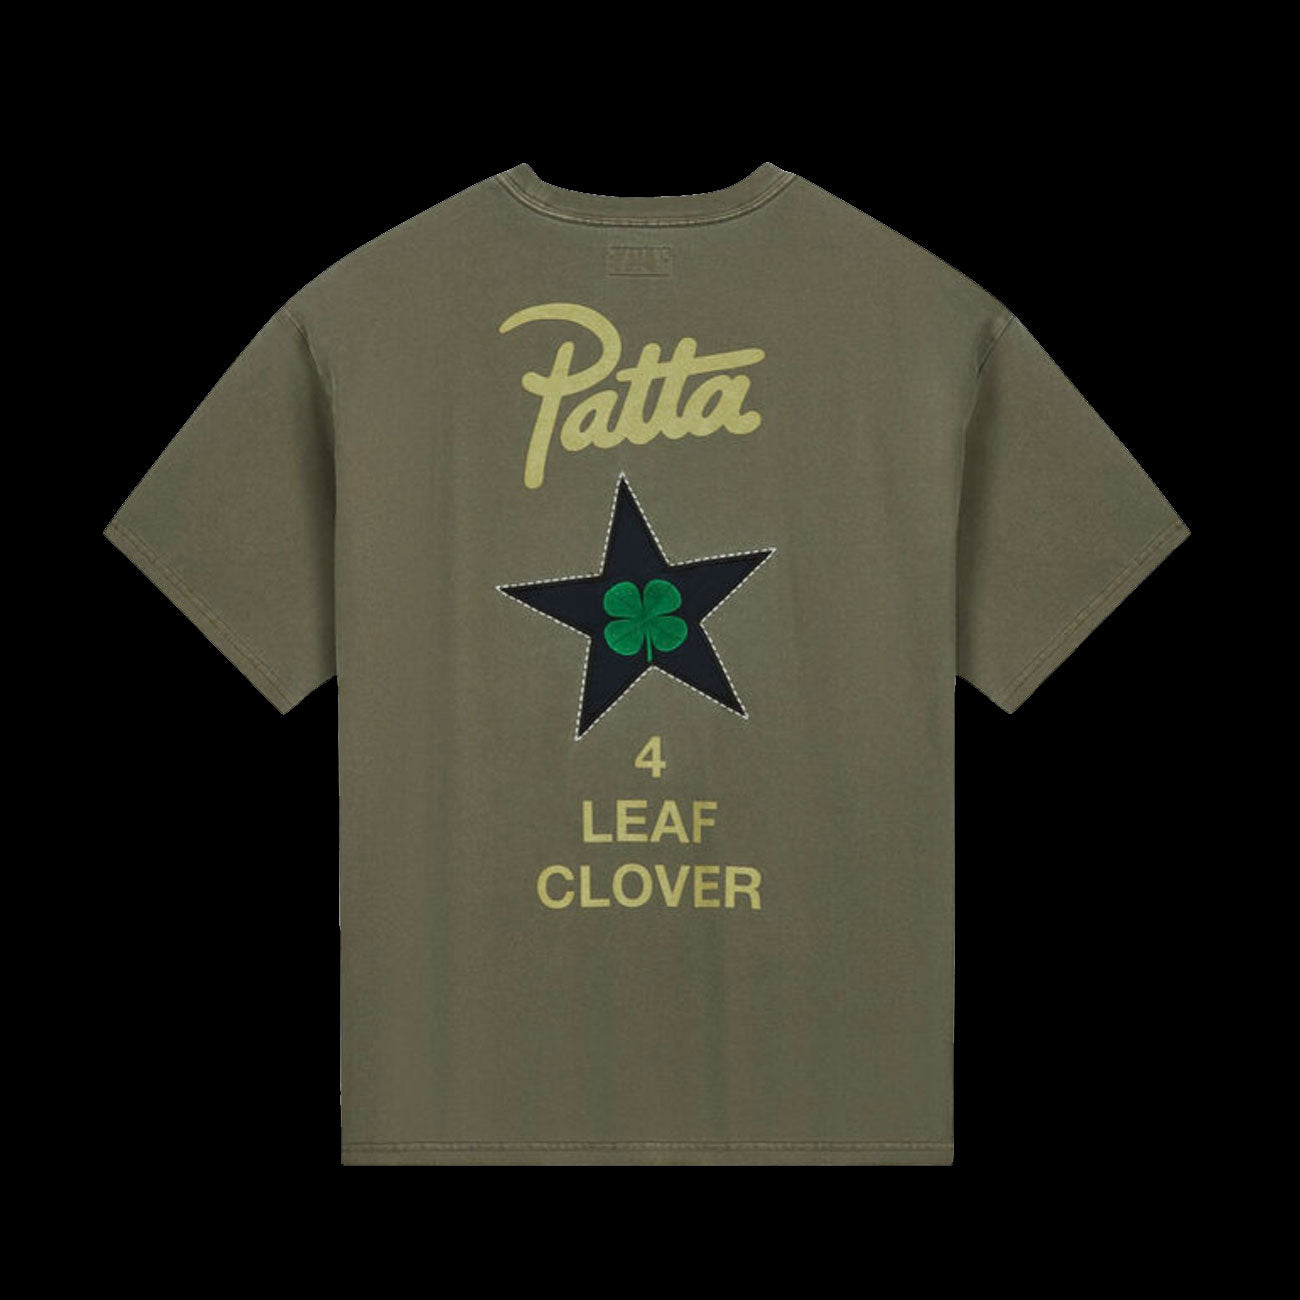 Converse x Patta Unisex T-Shirt (Green)